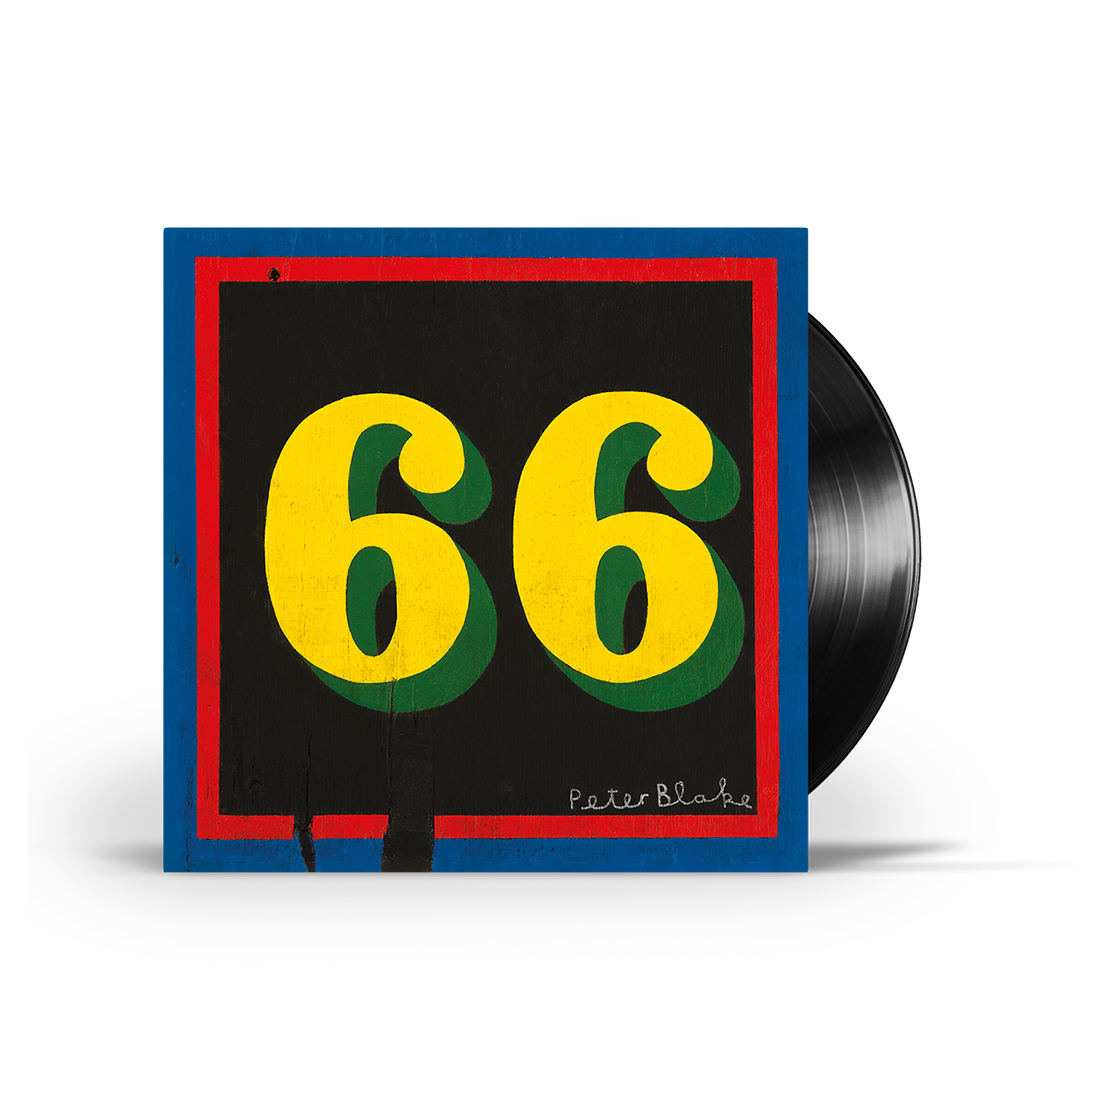 66: Limited Blue + Classic Black Vinyl LP